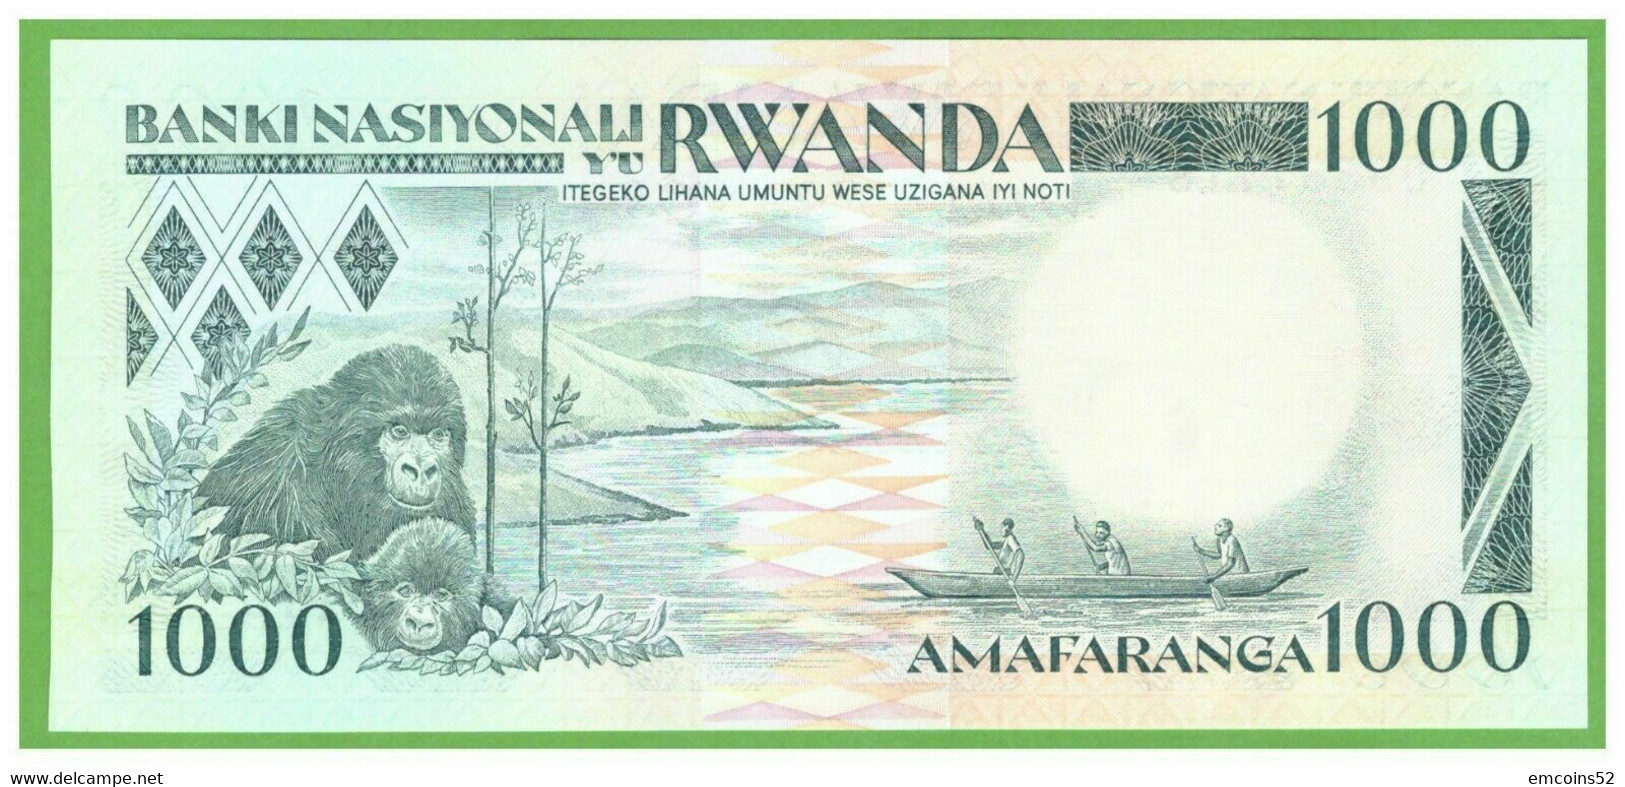 RWANDA 1000 FRANCS 1988  P-21 UNC - Ruanda